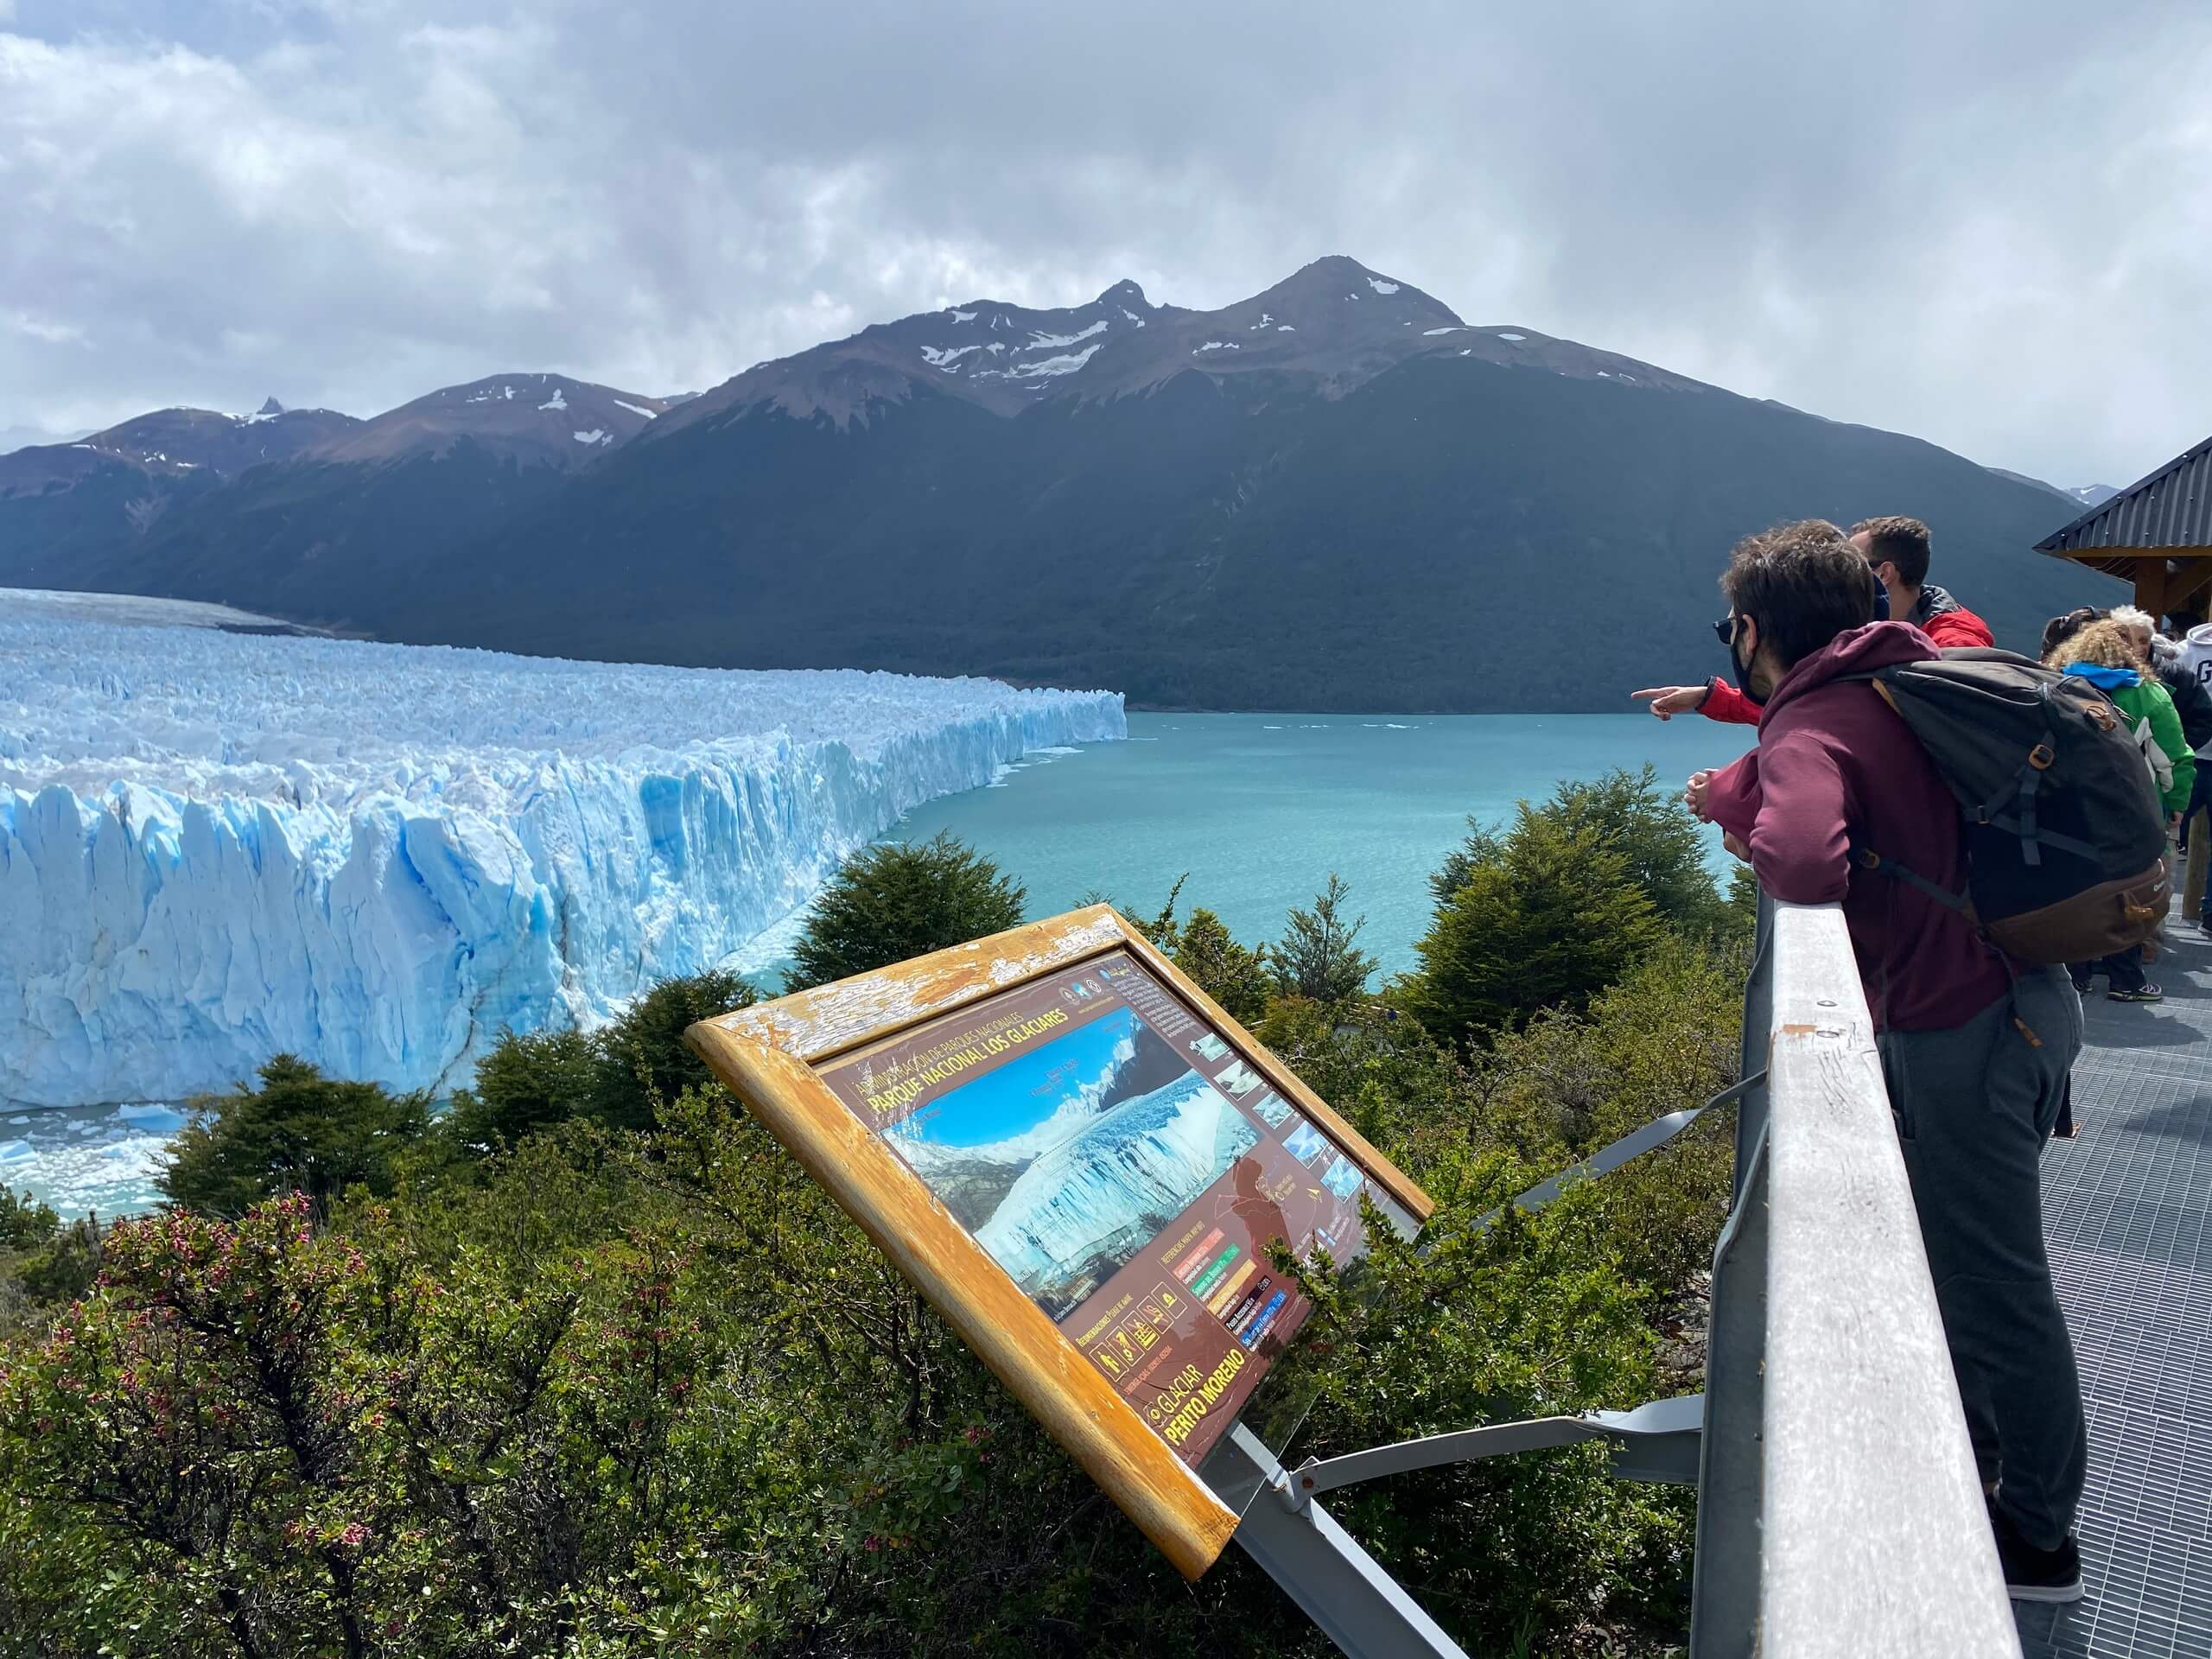 Overlooking the Perito Moreno Glacier